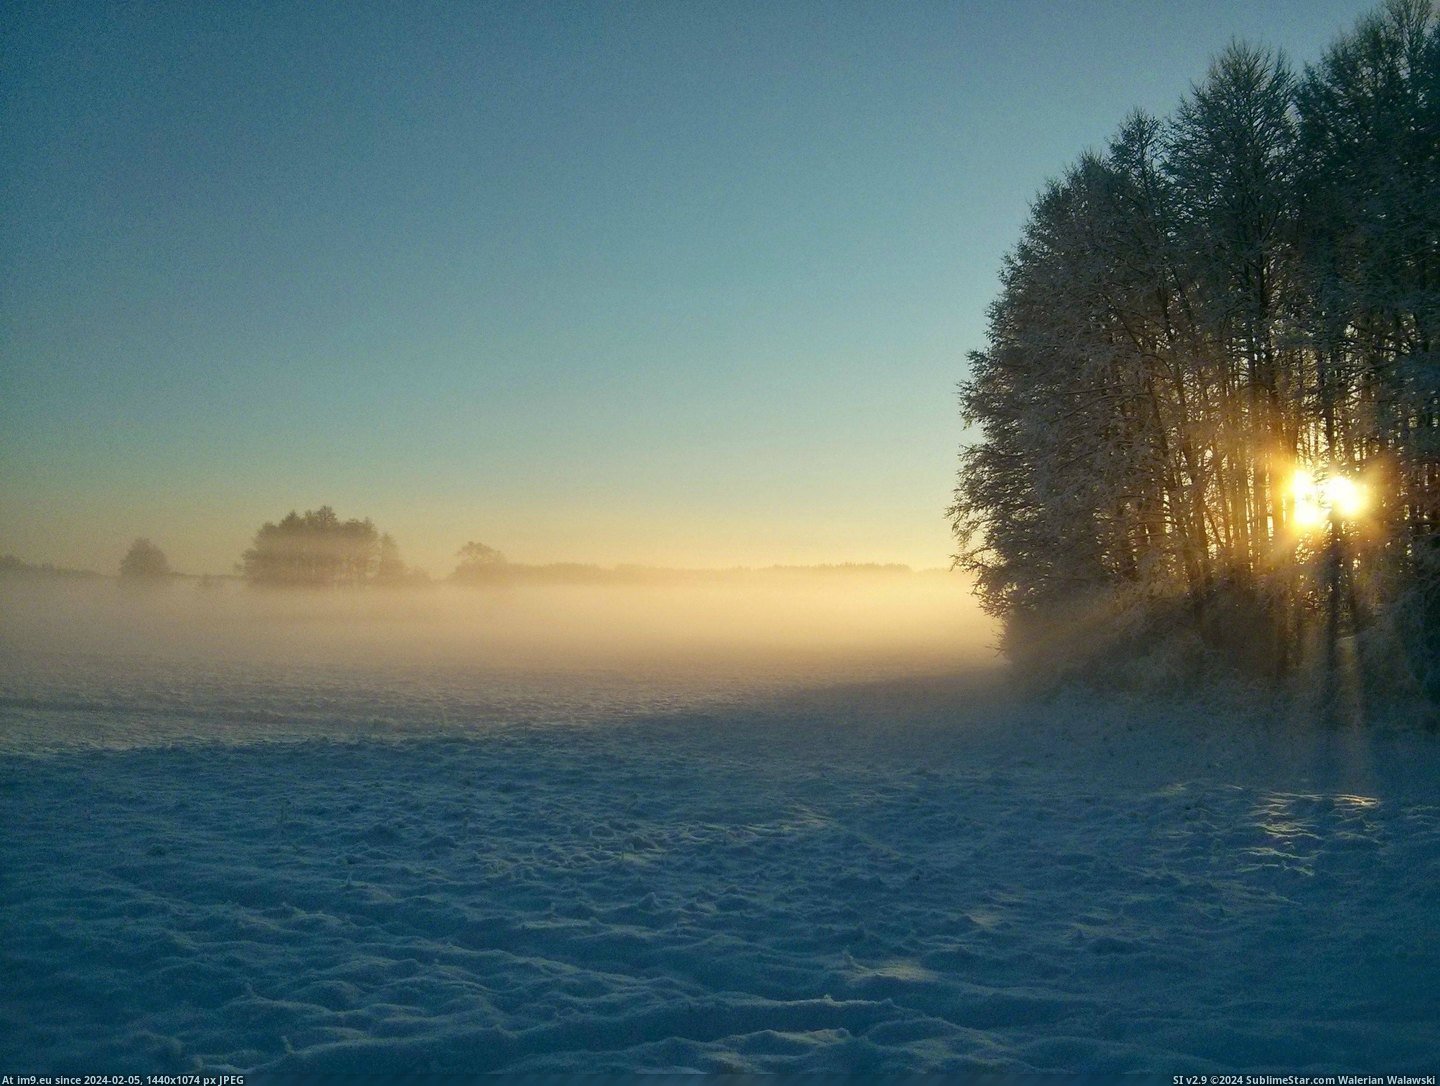 #Wallpaper #Beautiful #Wide #Misty #Pomerania #3264x2448 #Poland #Evening [Earthporn] Misty evening in Pomerania, Poland [OC][3264x2448] Pic. (Obraz z album My r/EARTHPORN favs))